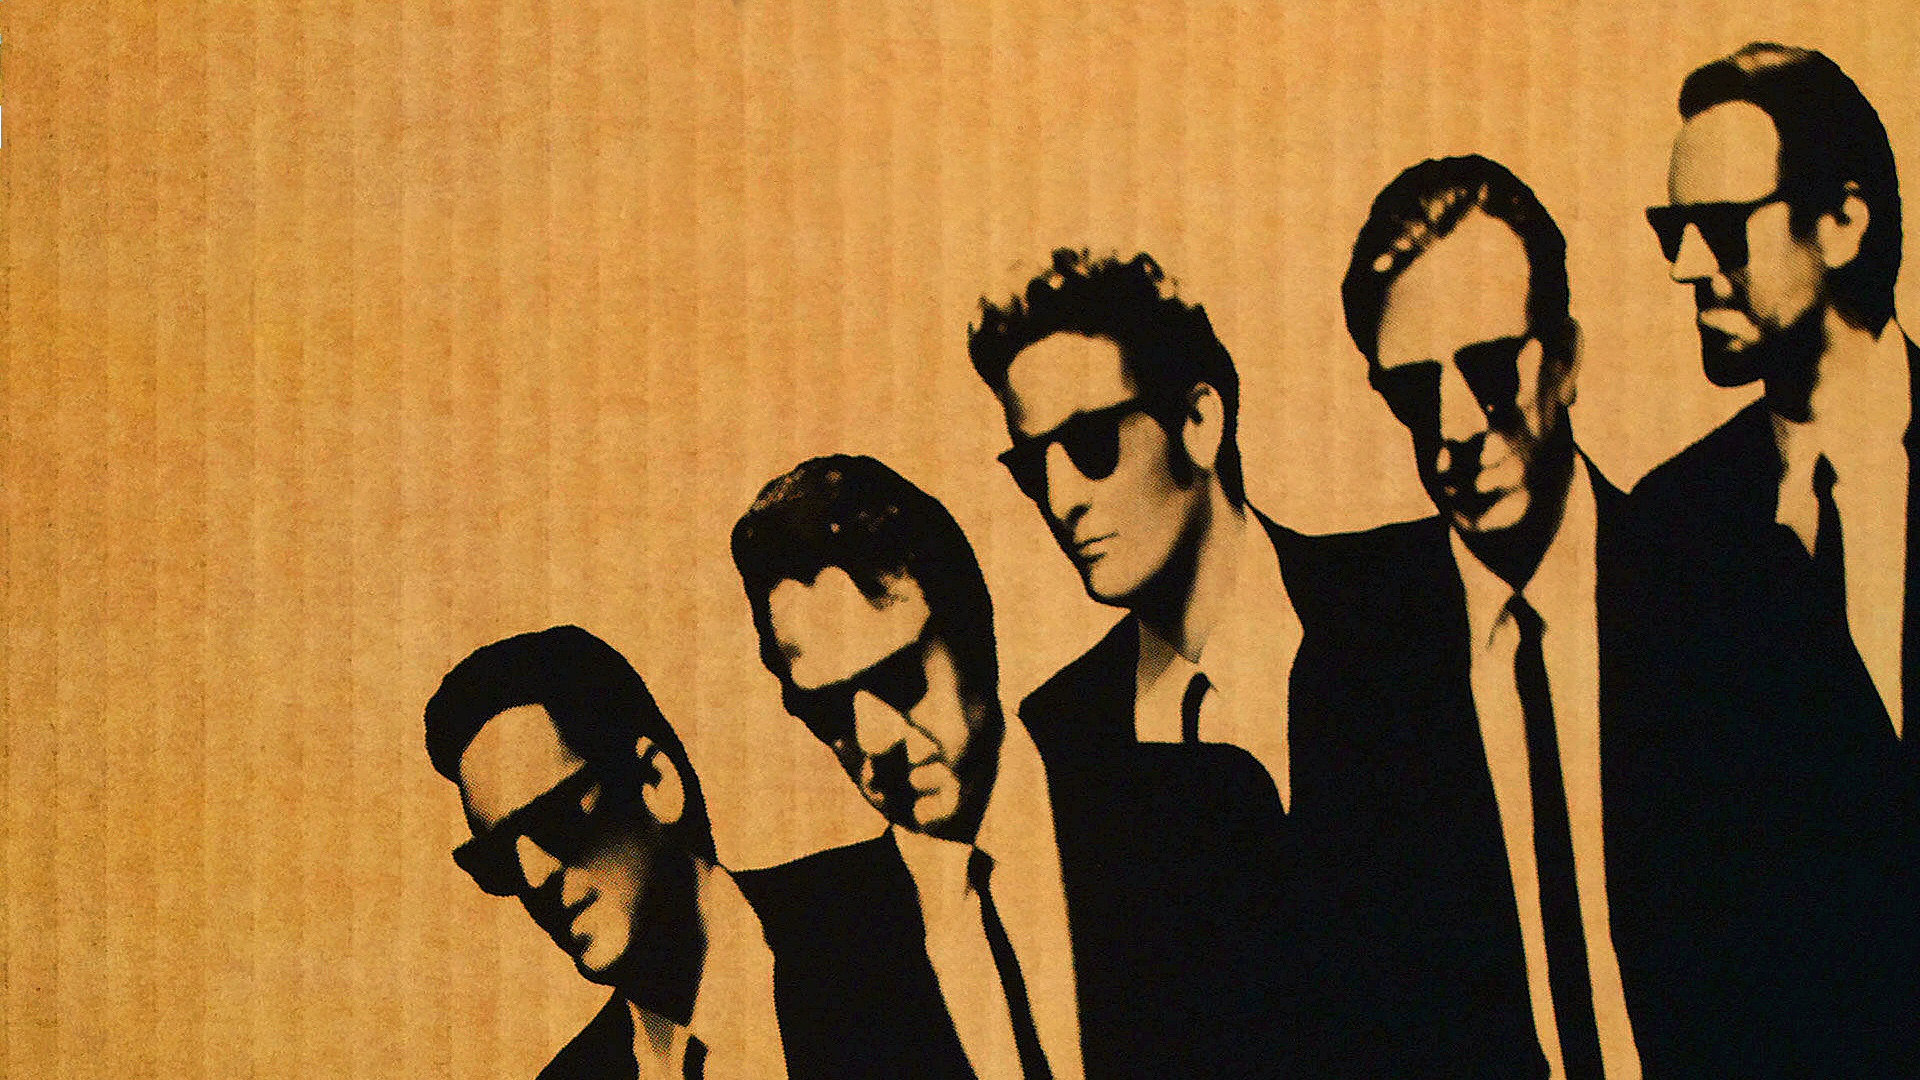 Reservoir Dogs Wallpaper